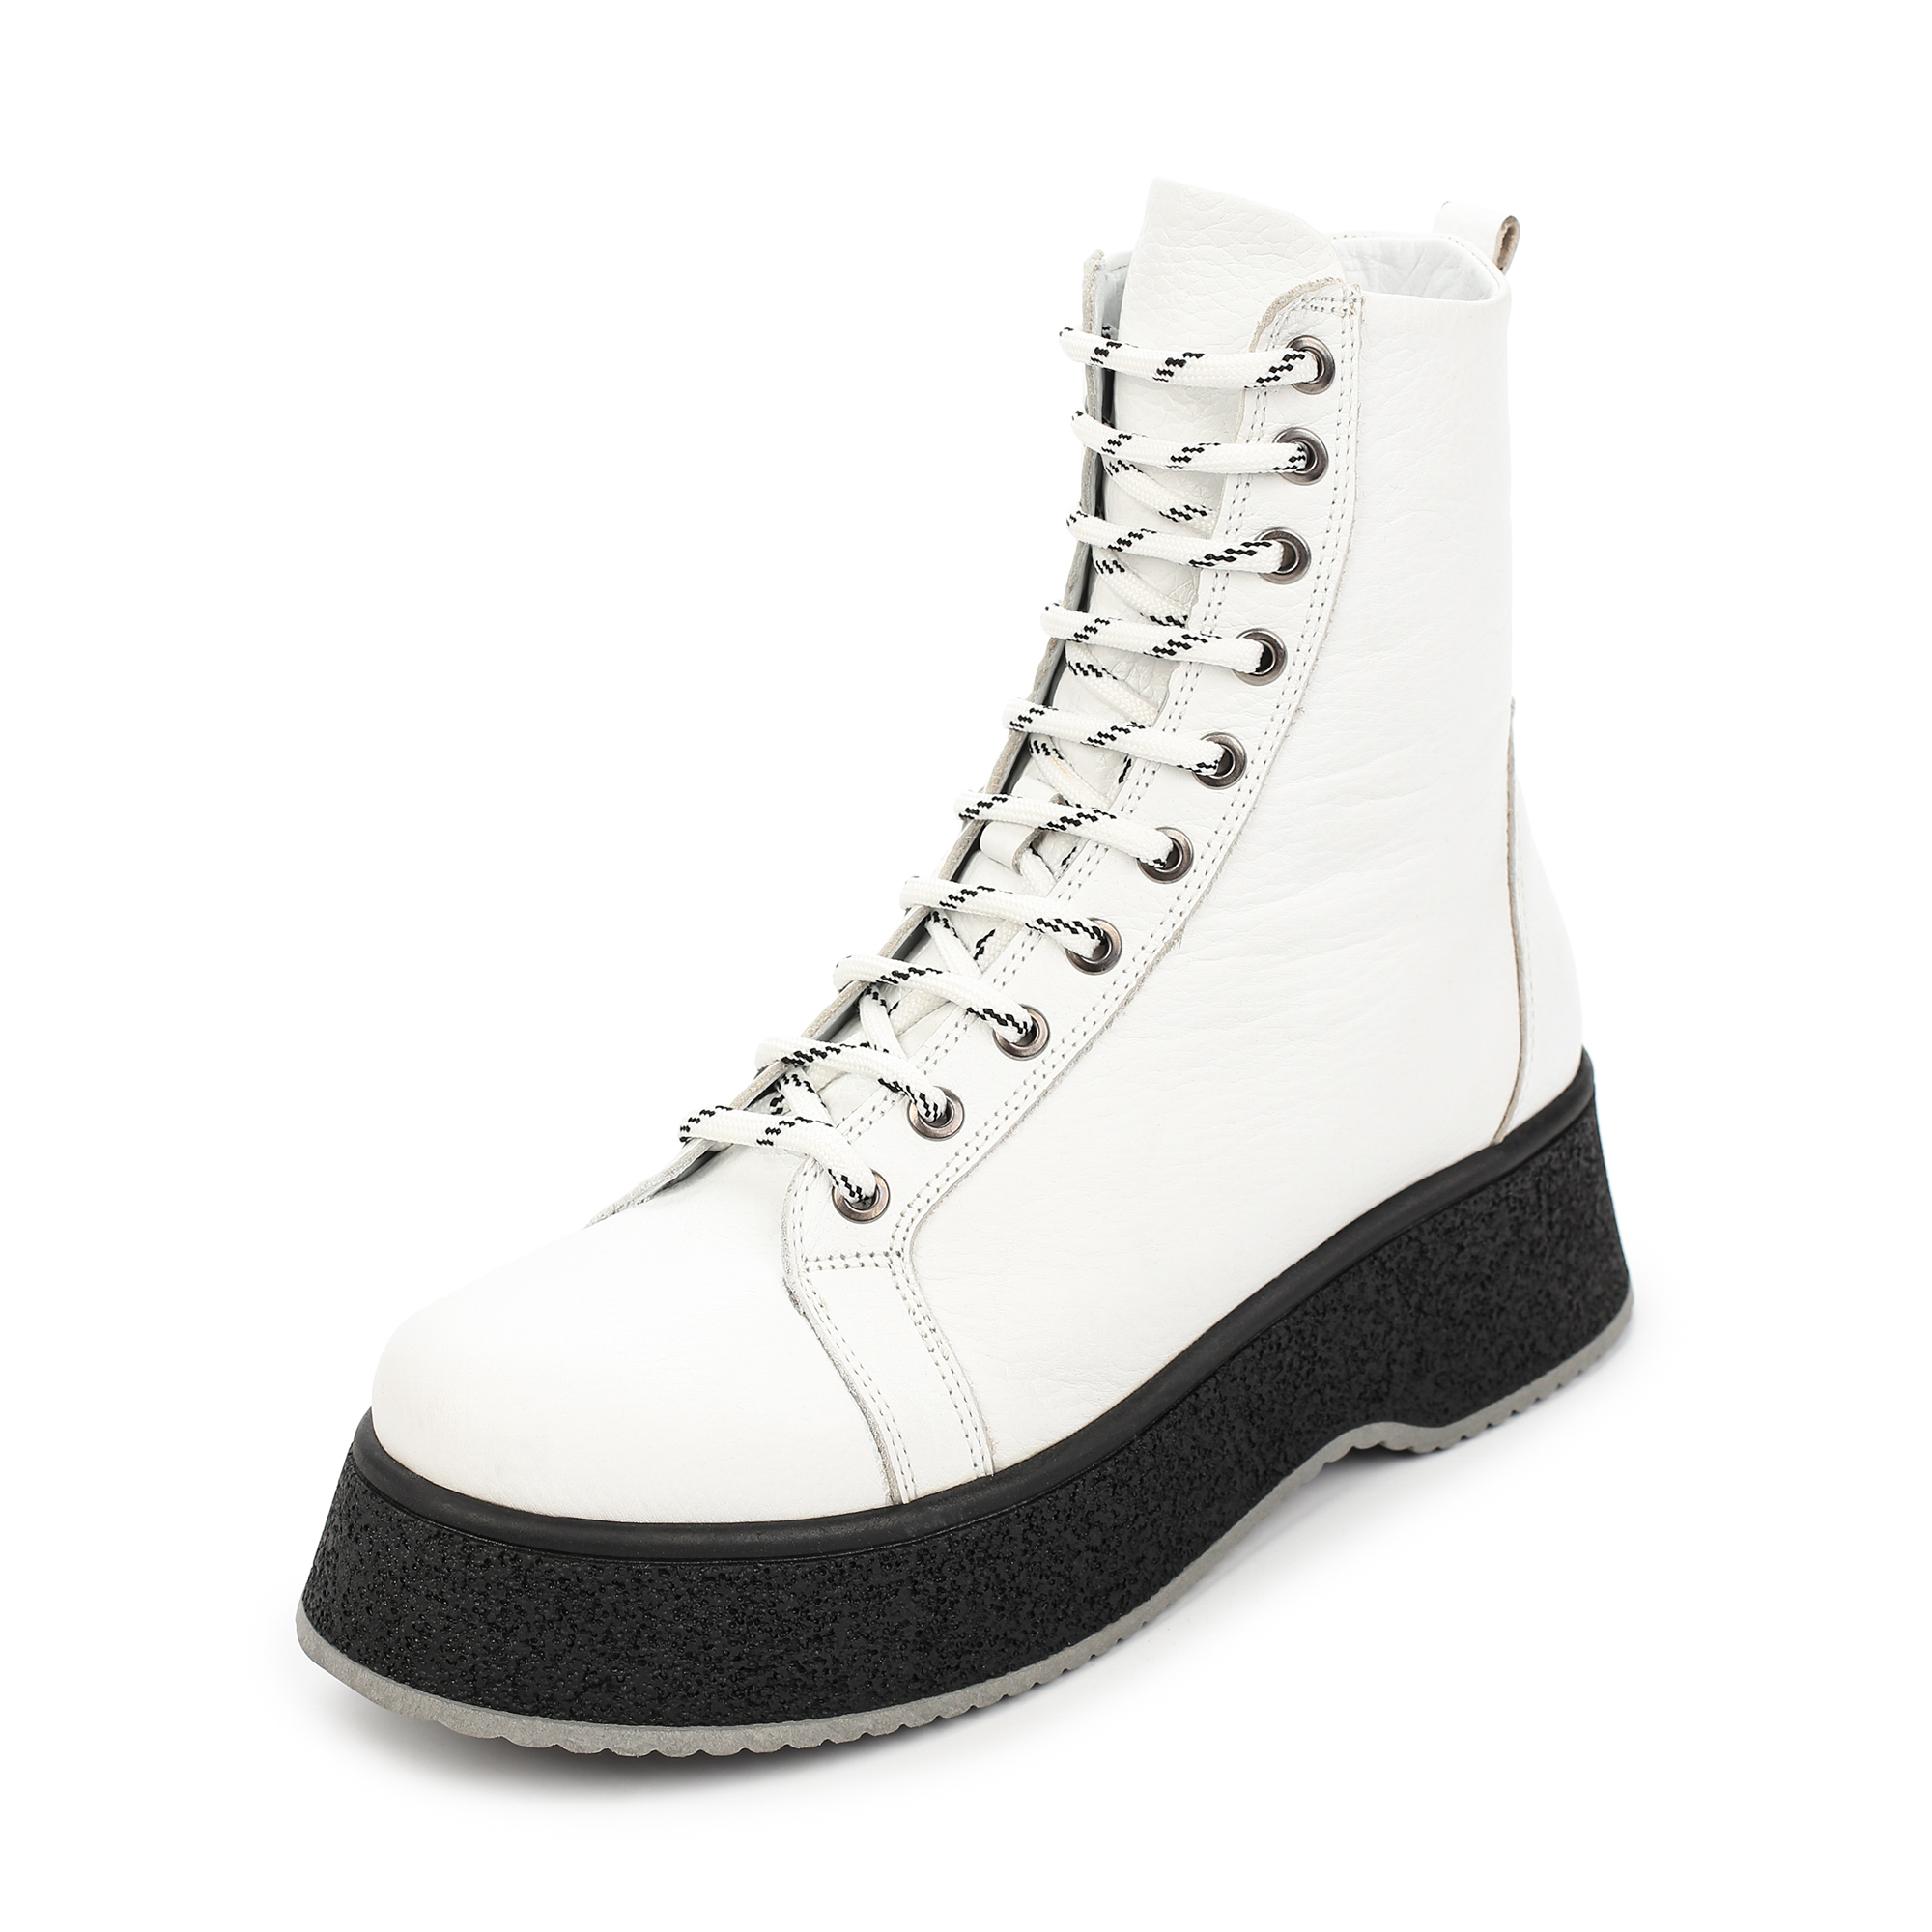 Ботинки Thomas Munz 505-240A-2101, цвет белый, размер 39 - фото 2